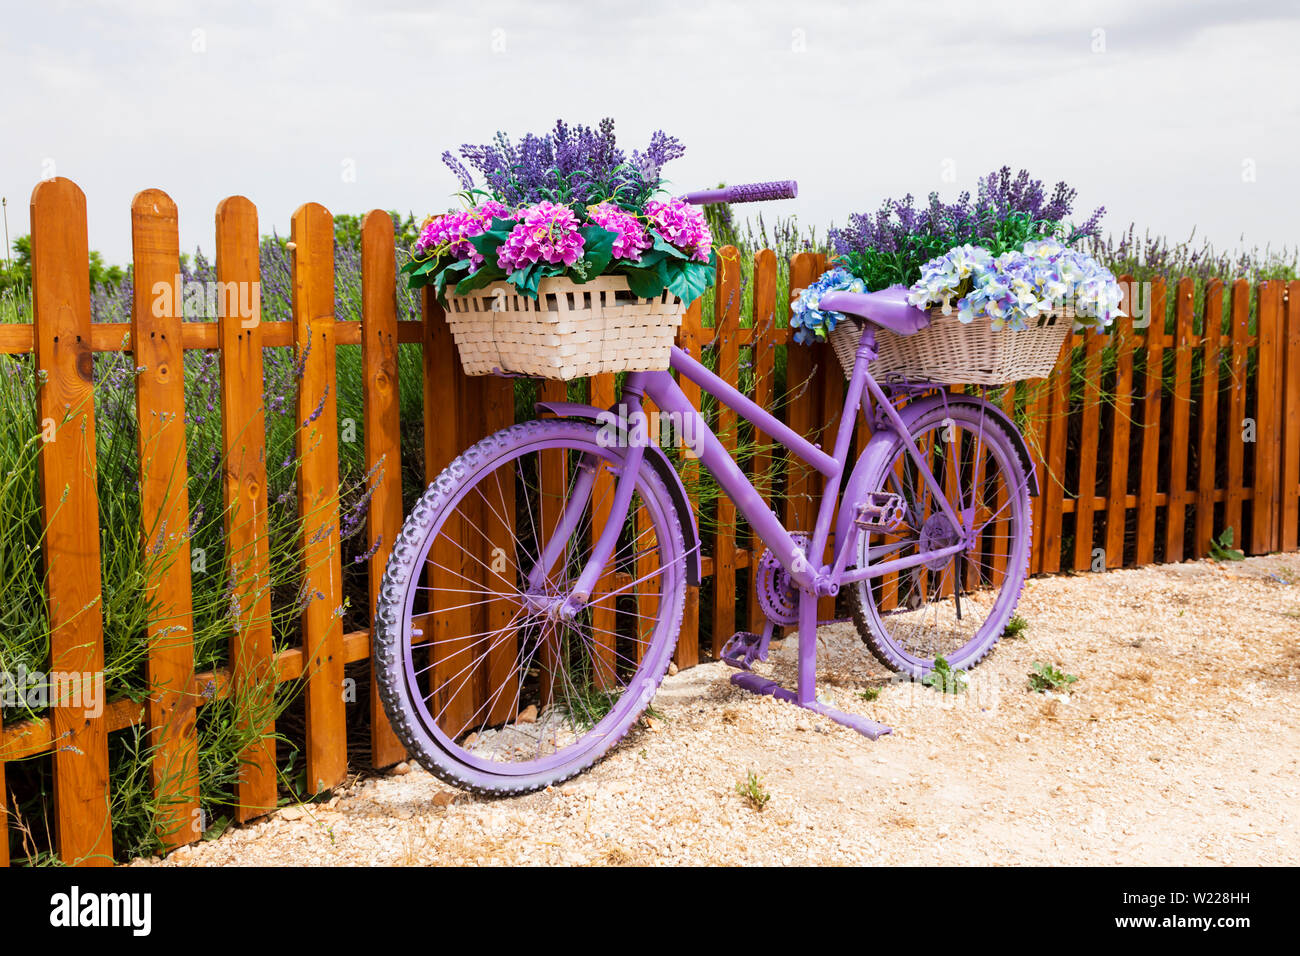 Lila lackiert Fahrrad mit schönen Blume Körbe. Cyherbia botanischen Park und Lavendelgärten, Sotira, Zypern. Juni 2019 Stockfoto